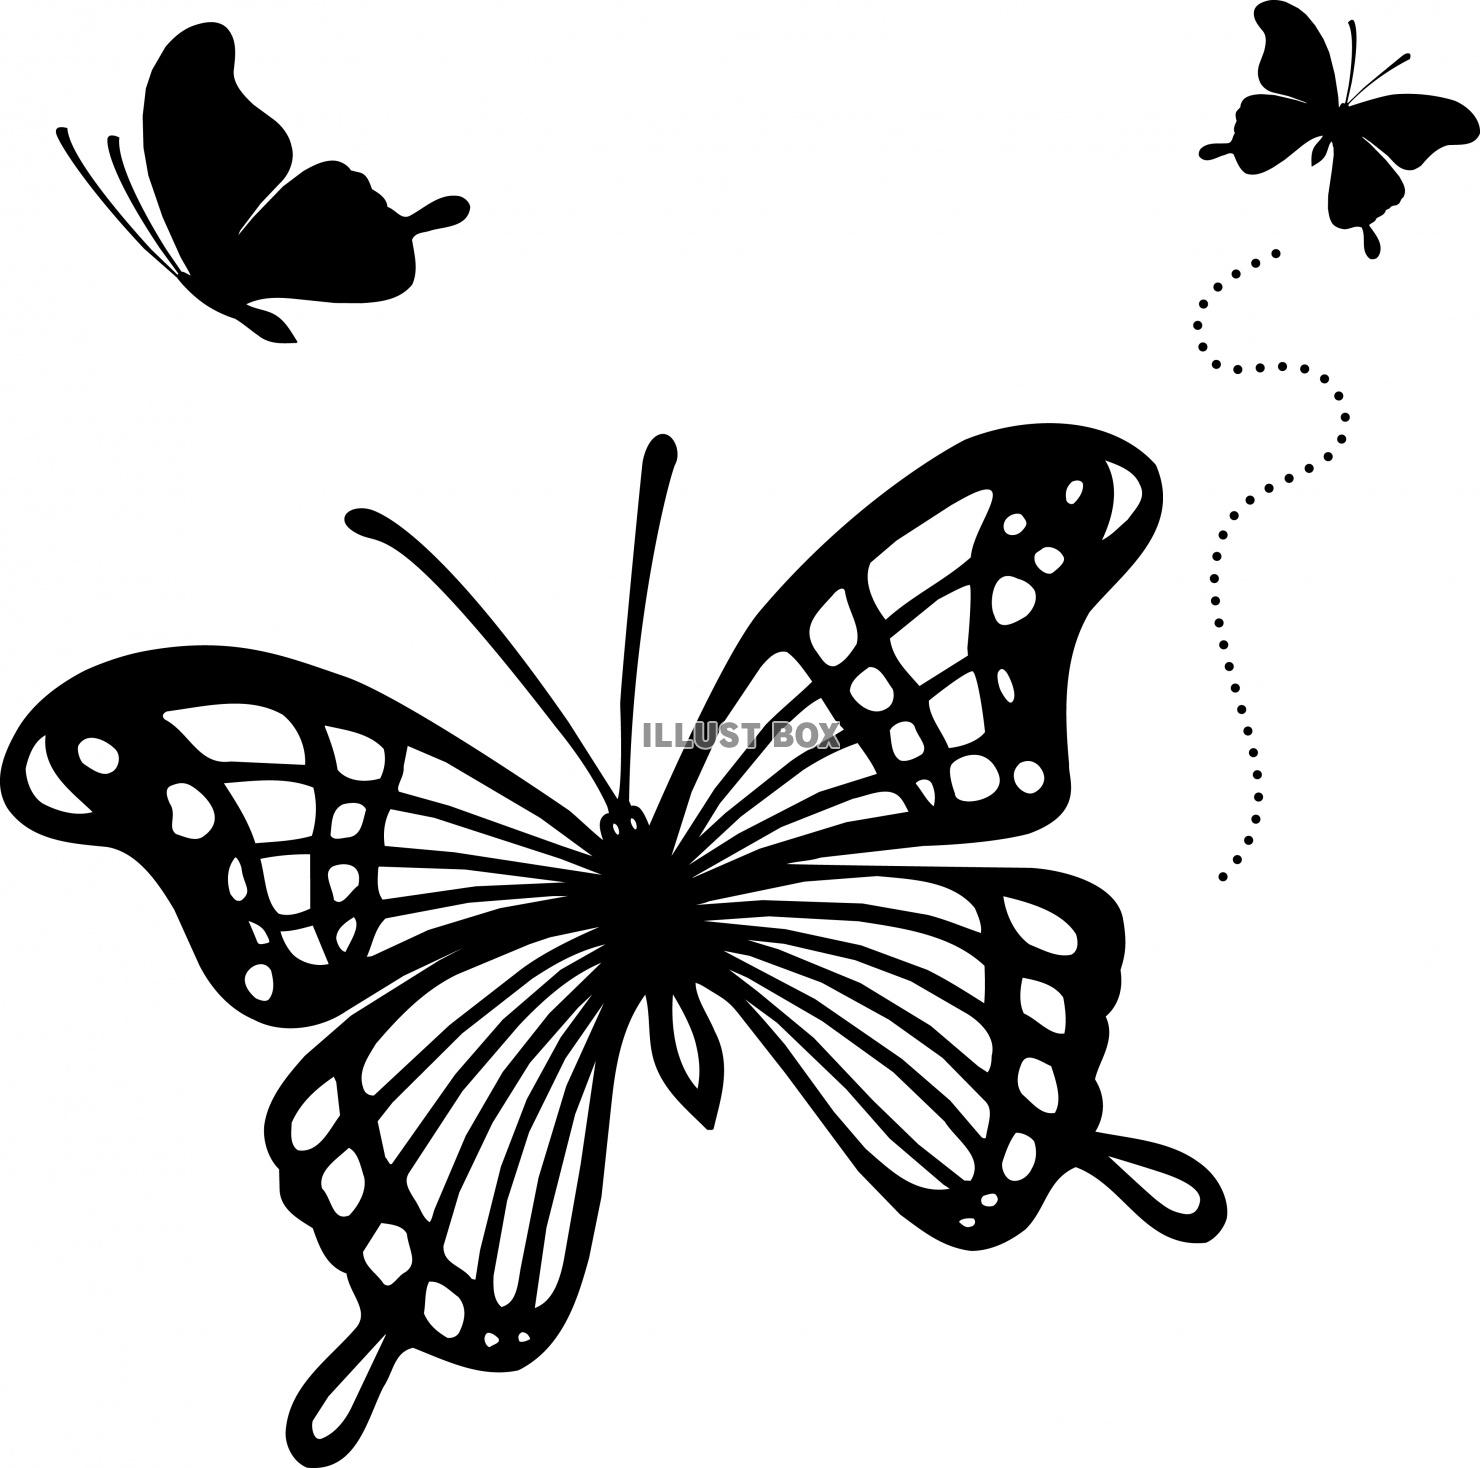 無料イラスト 蝶のシルエットイラストセット